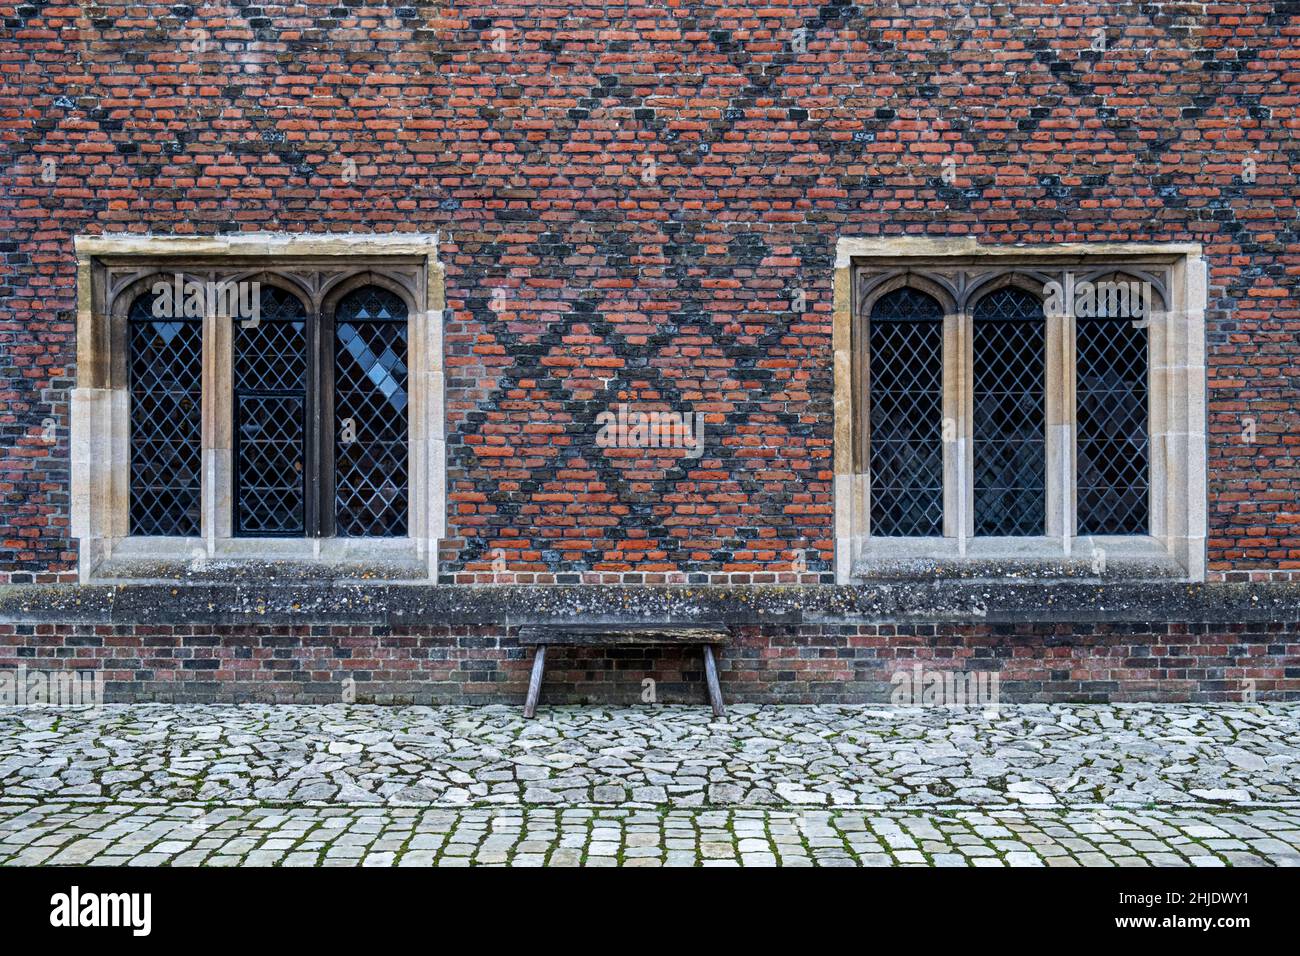 Finestre Tudor casement & mattoni policromi Tudor: Mattoni rossi-arancioni in English Cross-bond. Cantiere di ciottoli. Hampton Court Palace, Londra Foto Stock